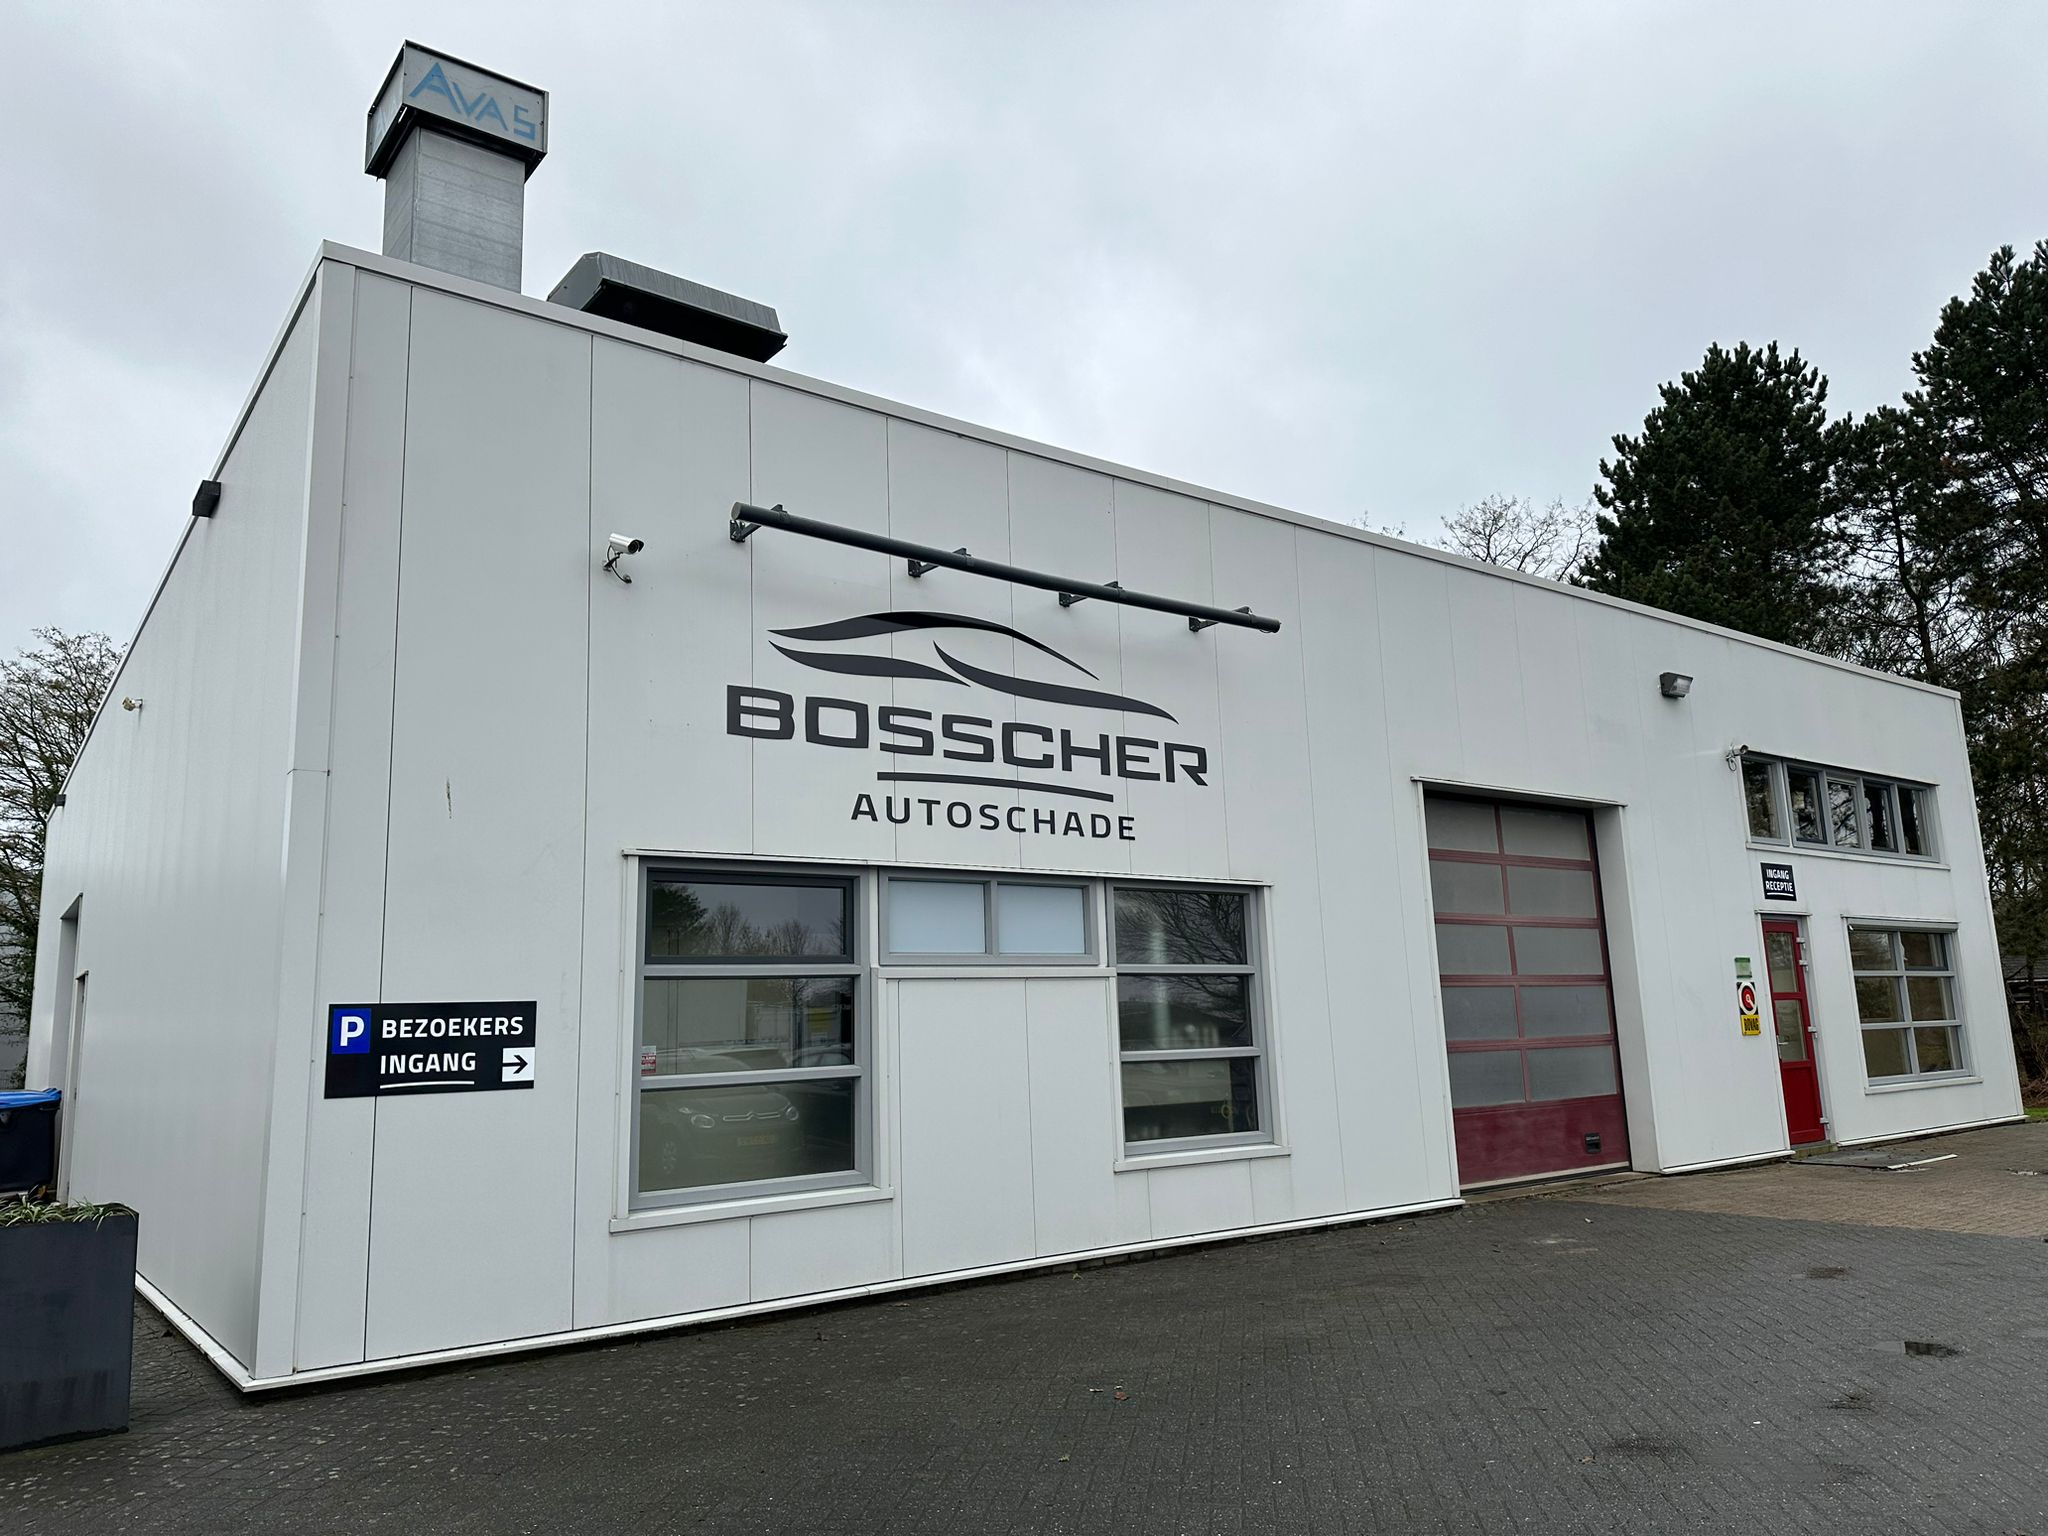 Autoschade Bosscher start onderneming in Tynaarlo: ‘Dat spelletje kan ik ook’